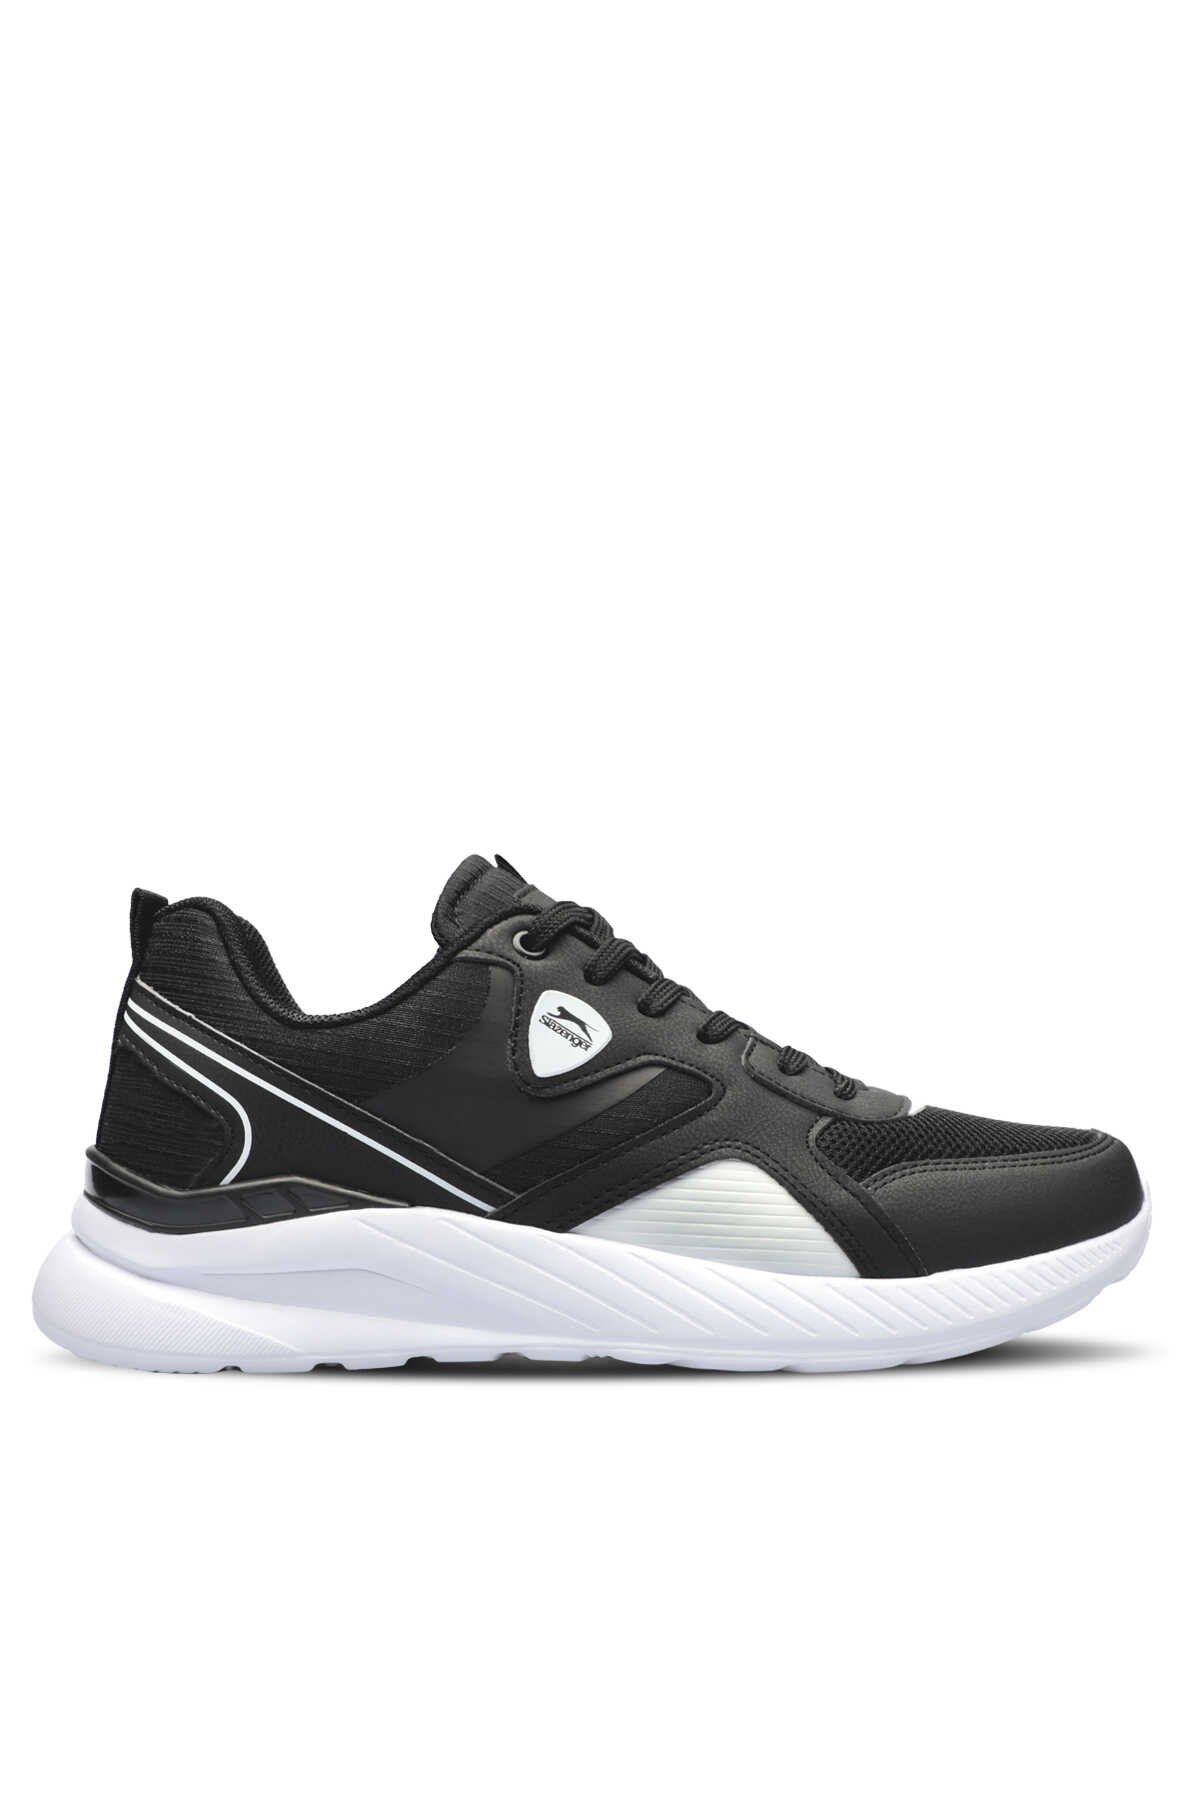 Slazenger - Slazenger ZAVIA Sneaker Erkek Ayakkabı Siyah / Beyaz